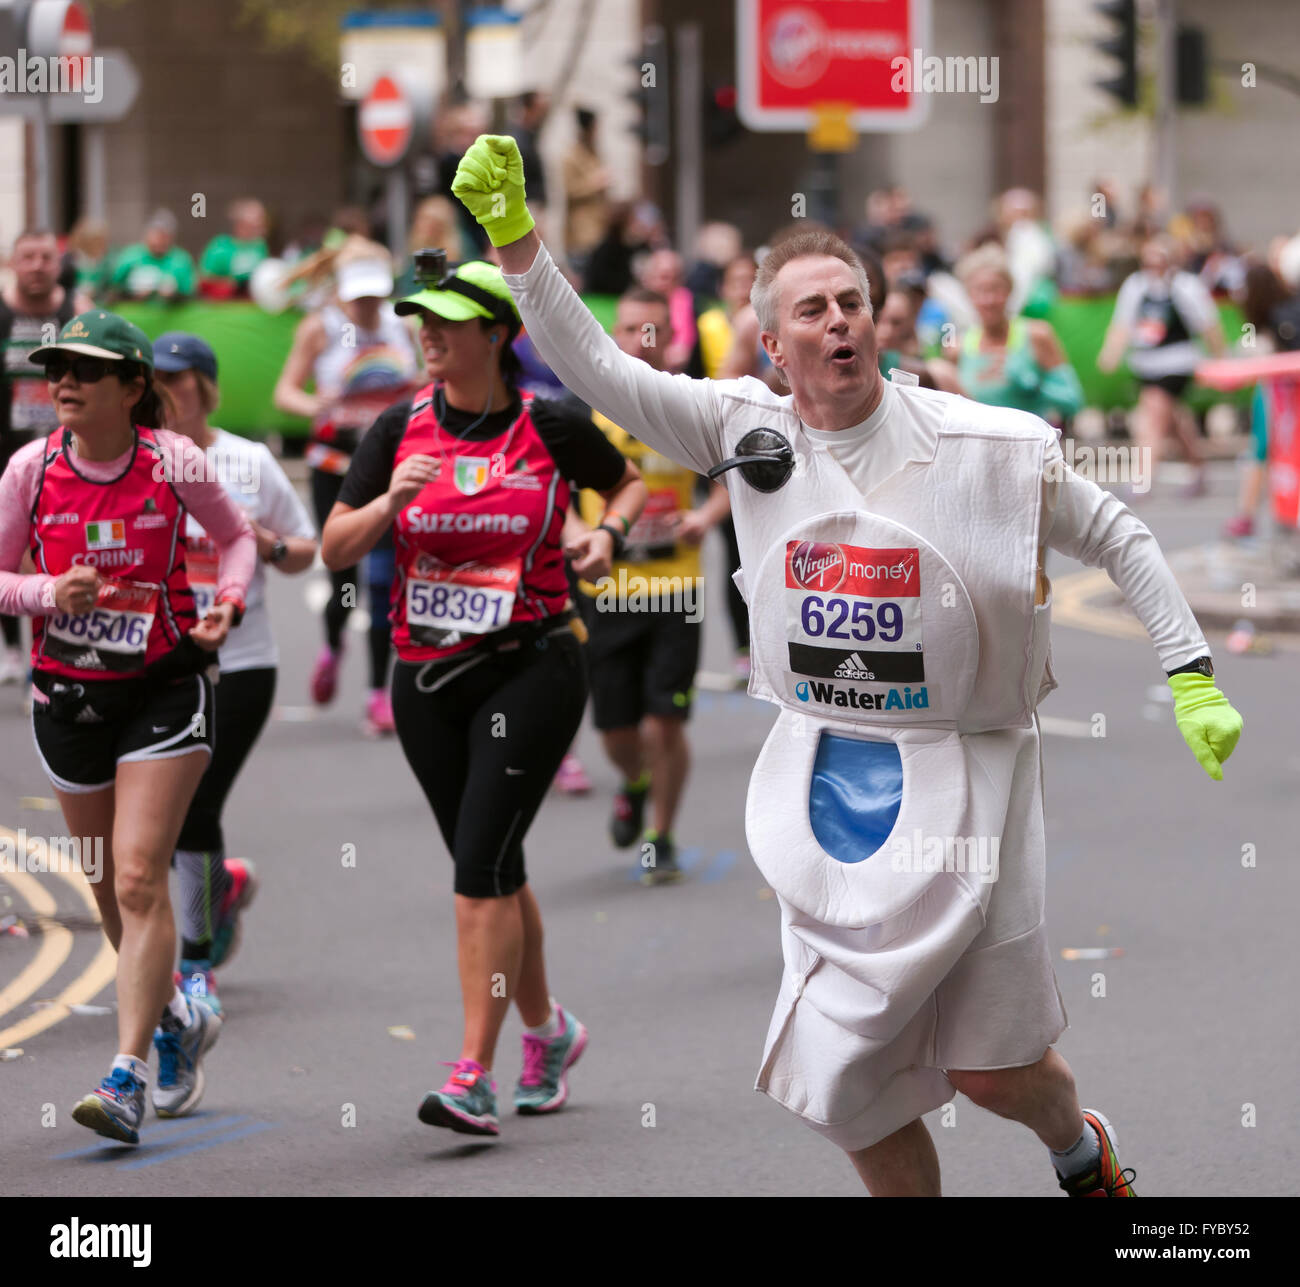 David John Fortune von Pewsey Vale Läufern, gekleidet wie eine Toilette in  2016-London-Marathon, ausgeführt im Auftrag von Water Aid Stockfotografie -  Alamy